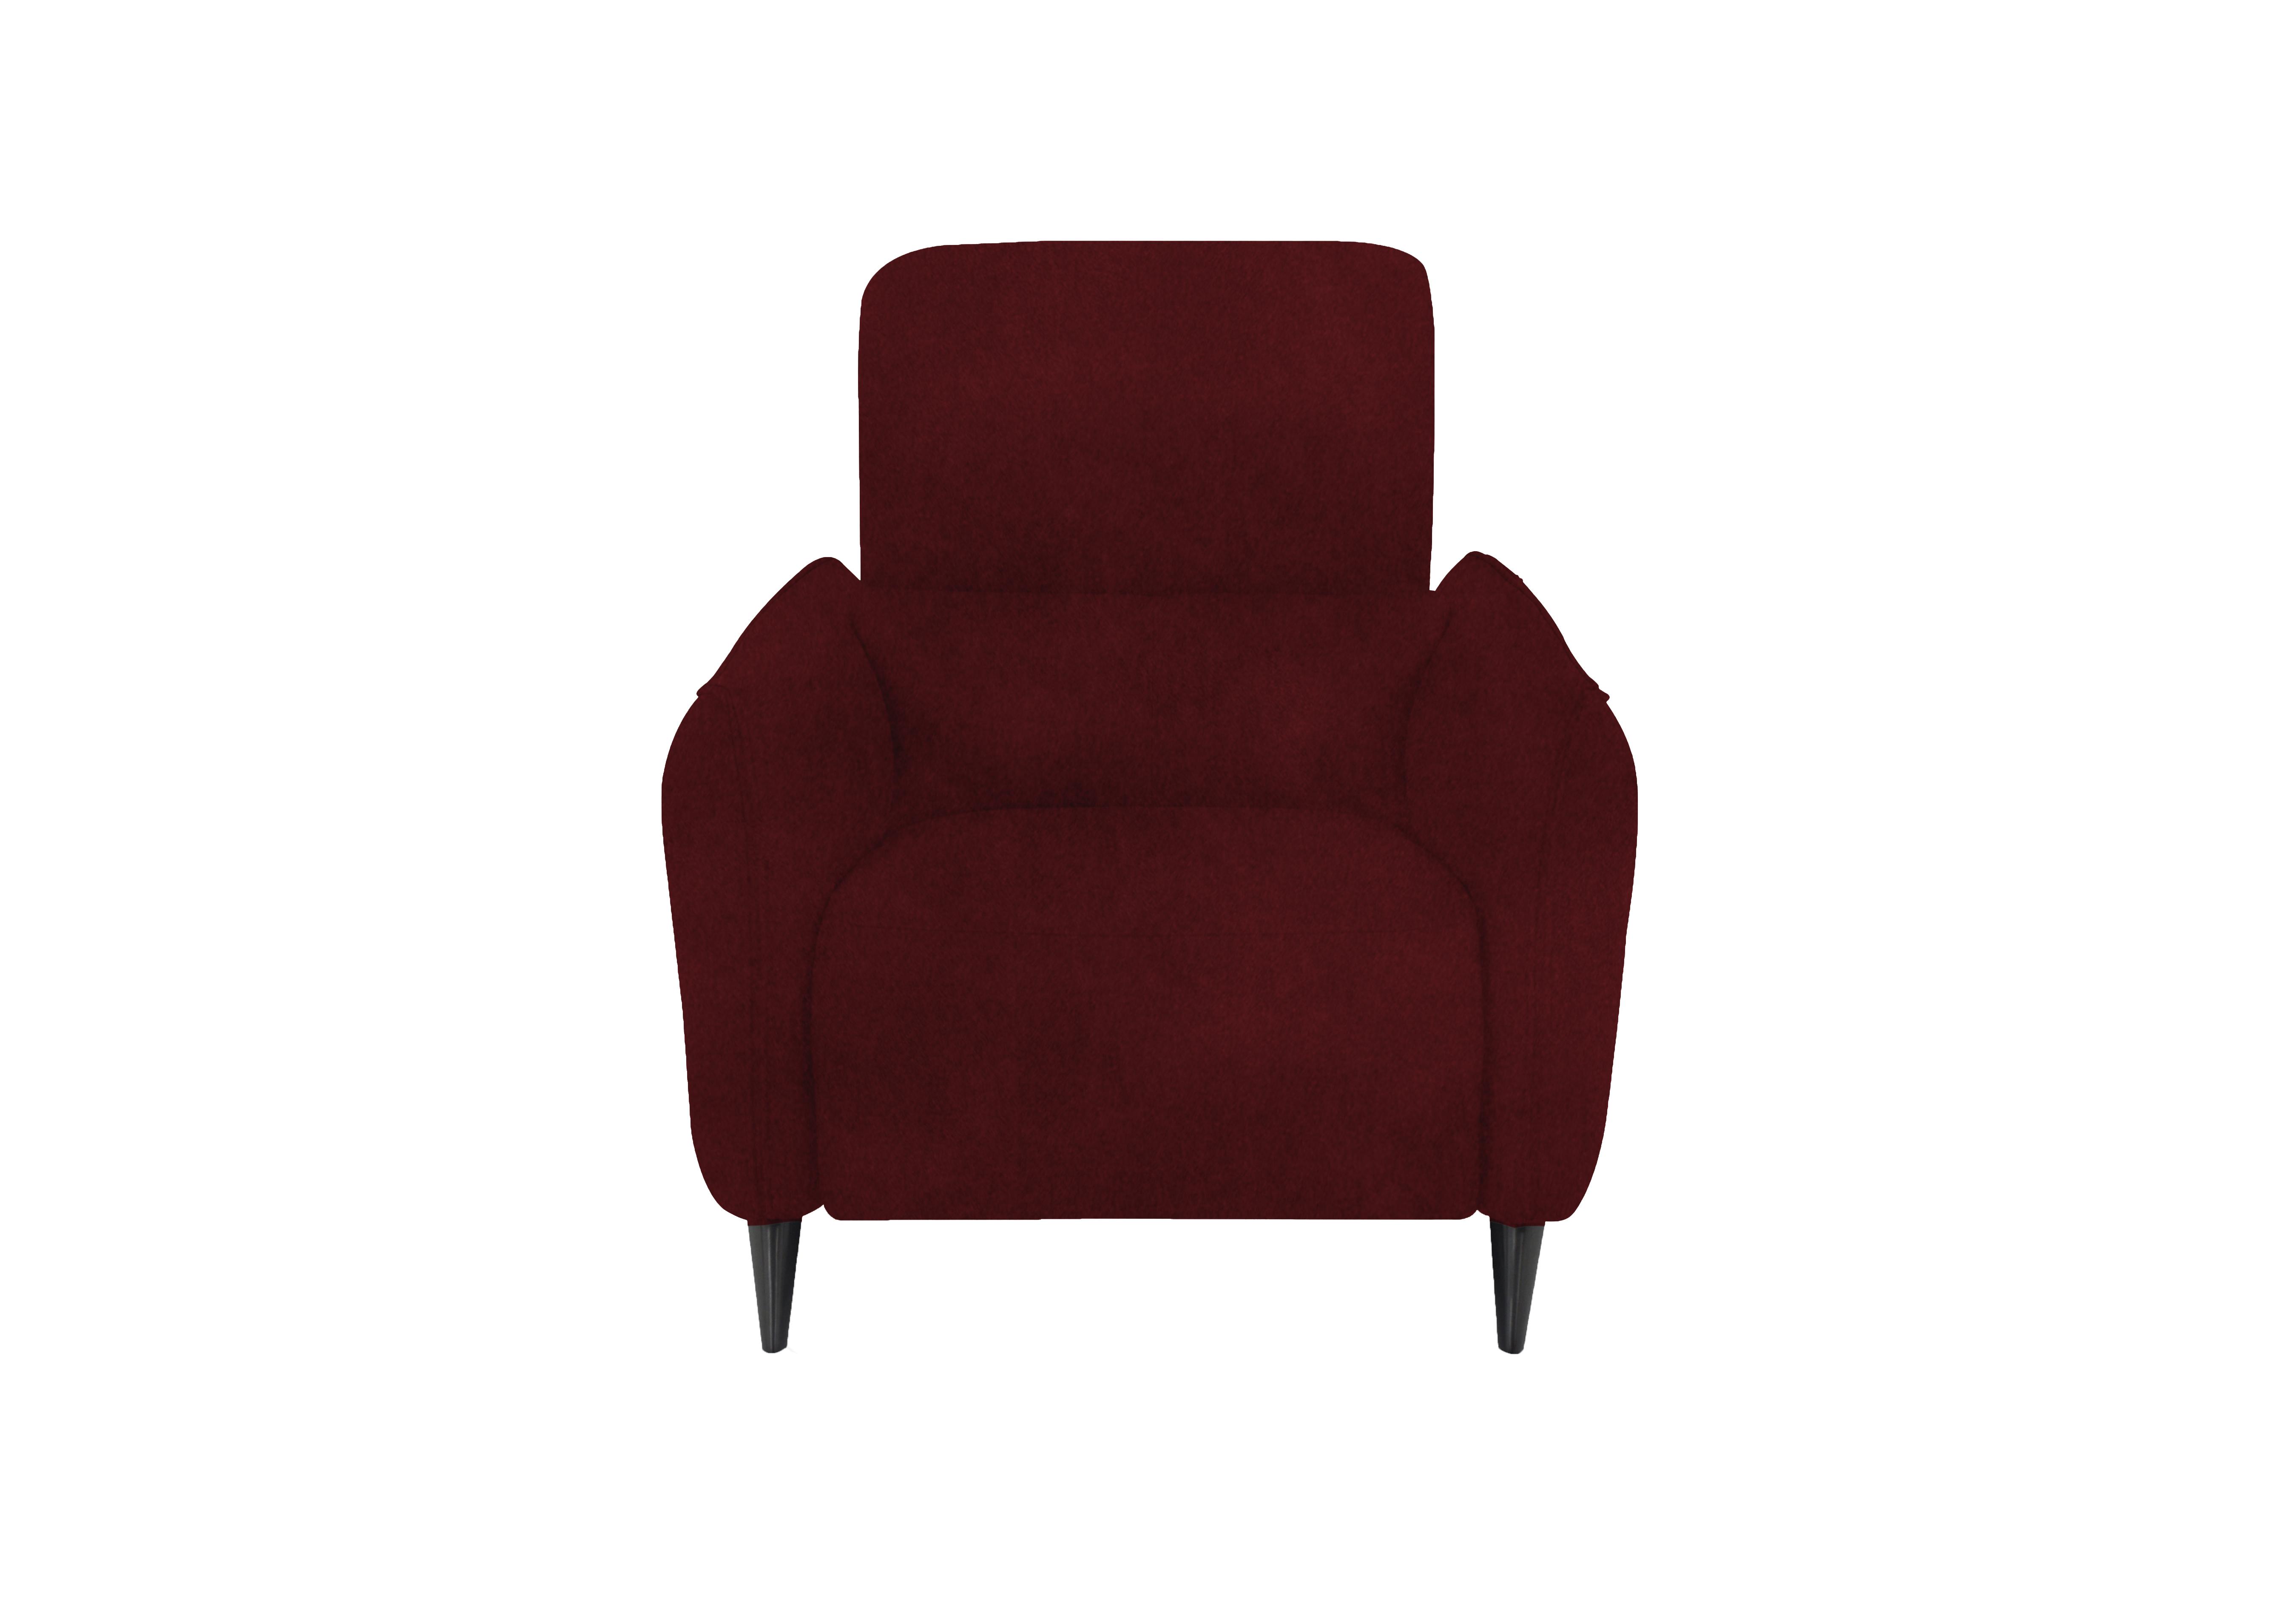 Maddox Fabric Chair in Fab-Meg-R65 Burgundy on Furniture Village